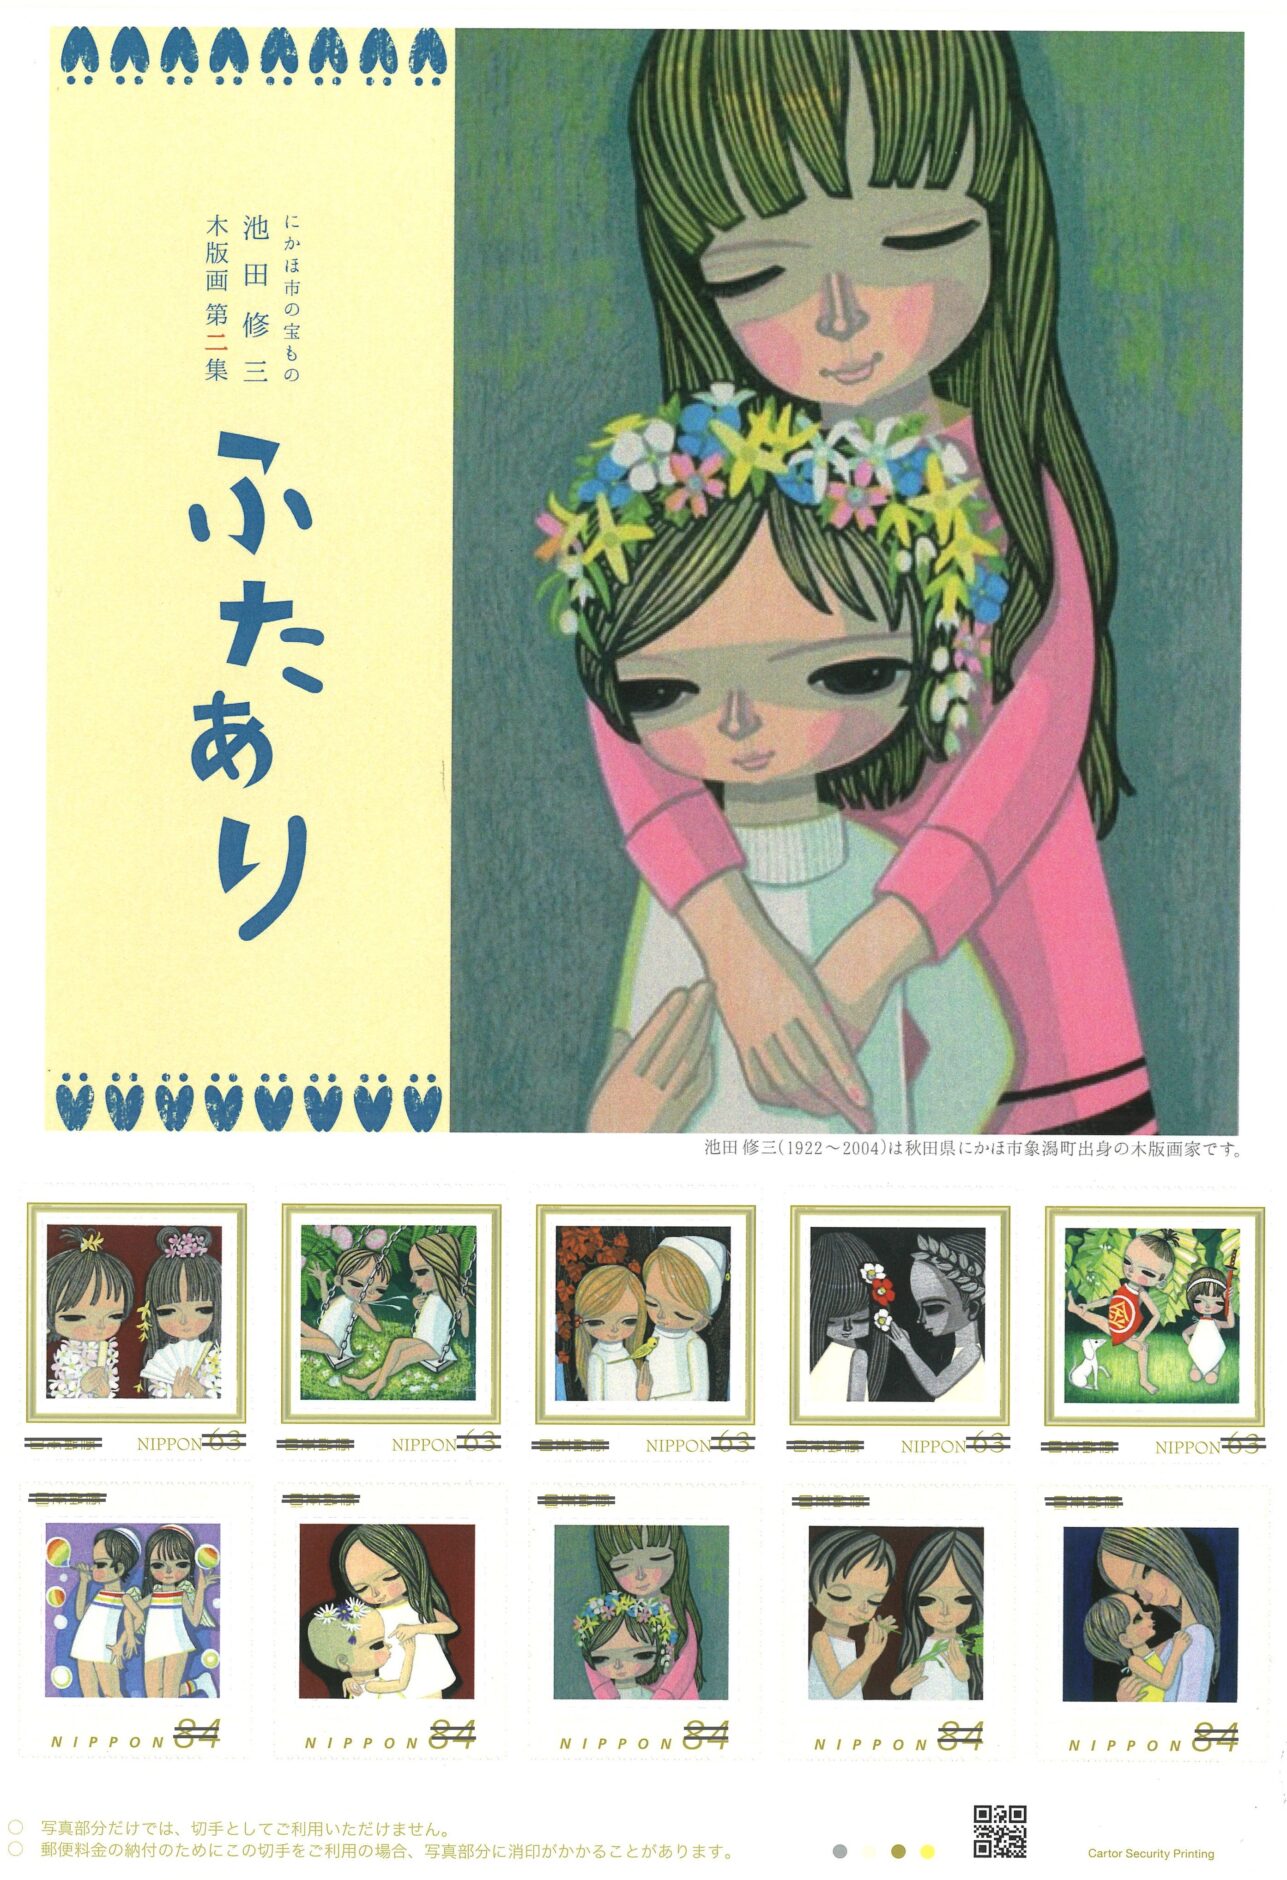 オリジナルフレーム切手「にかほ市の宝もの 池田修三 木版画」第2集